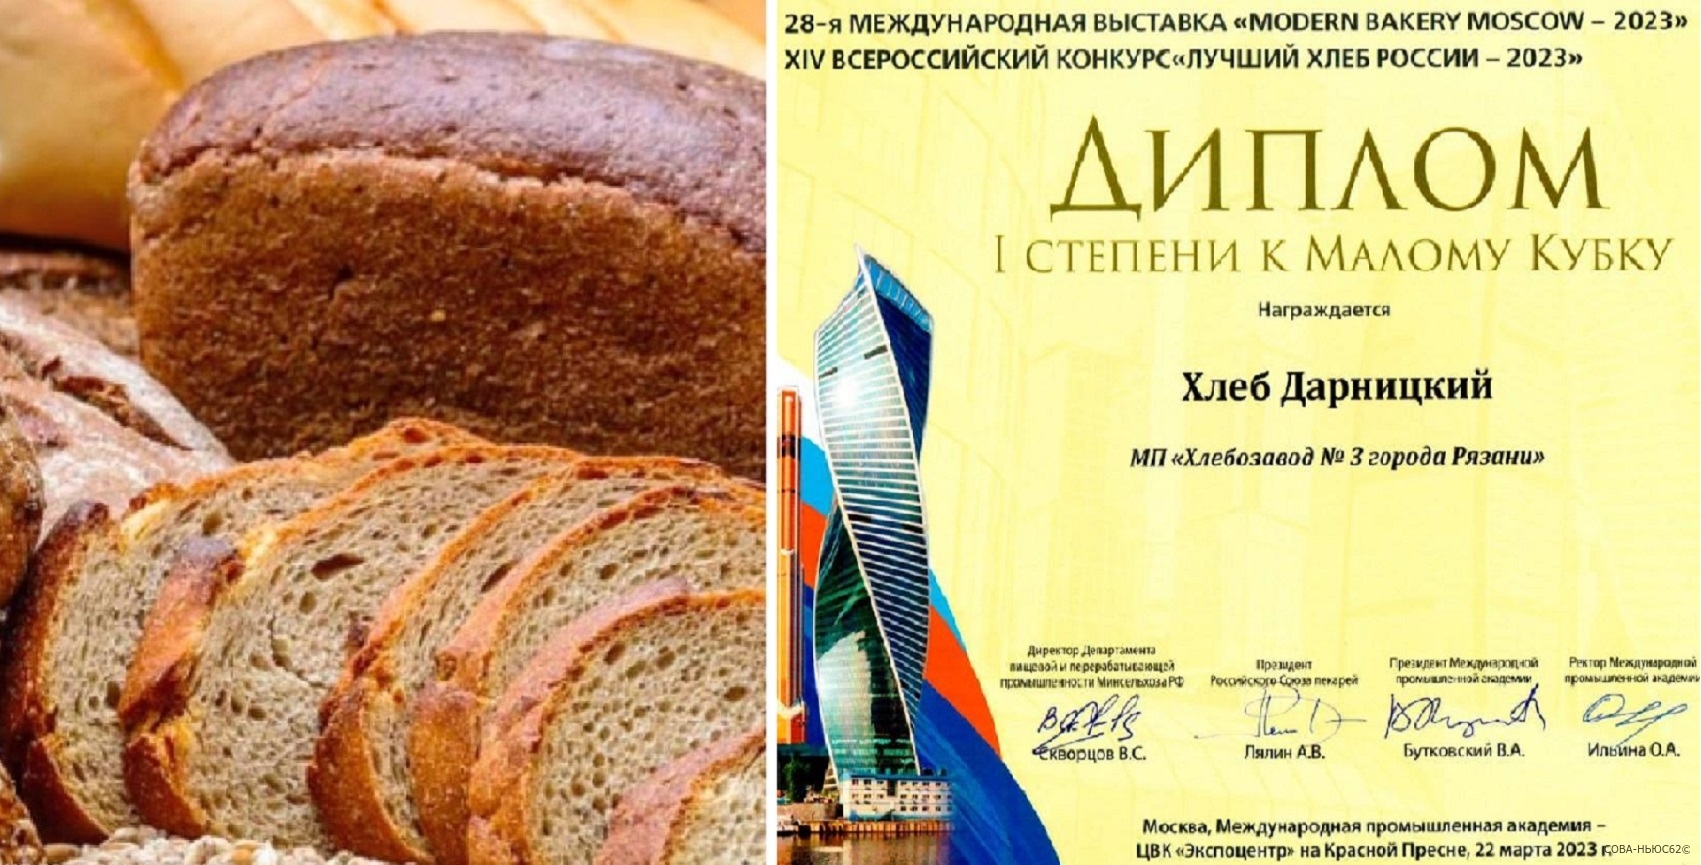 Рязанский хлеб «Дарницкий» из 100 лучших товаров выиграл конкурс в Москве